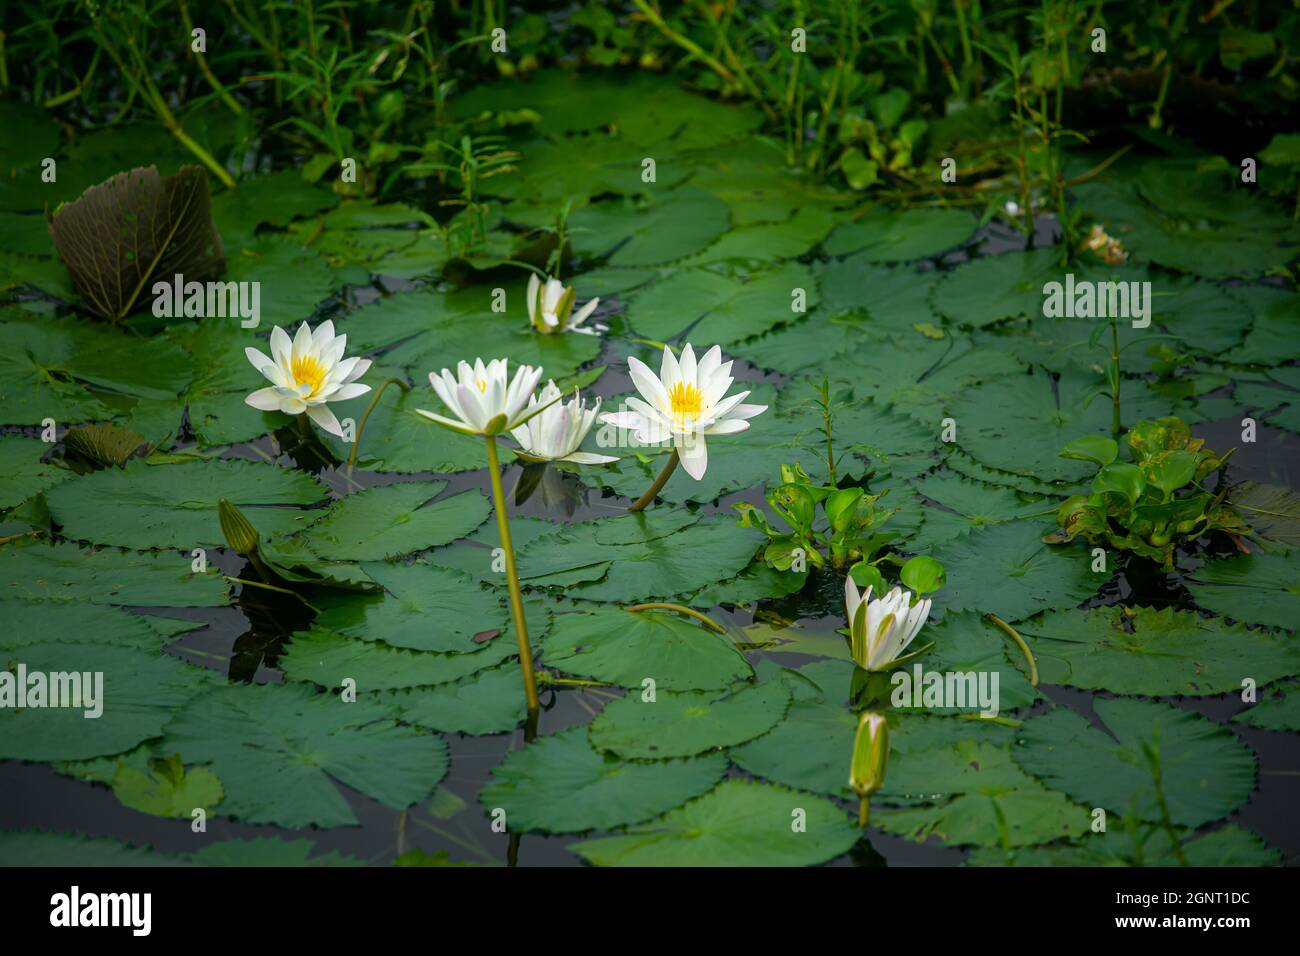 Lirio de agua (Nymphaeaceae, lirios de agua, lilly) floreciendo en el  estanque. Los ríos y estanques están llenos de lirios de agua blanca  durante la temporada de lluvias. El nati Fotografía de